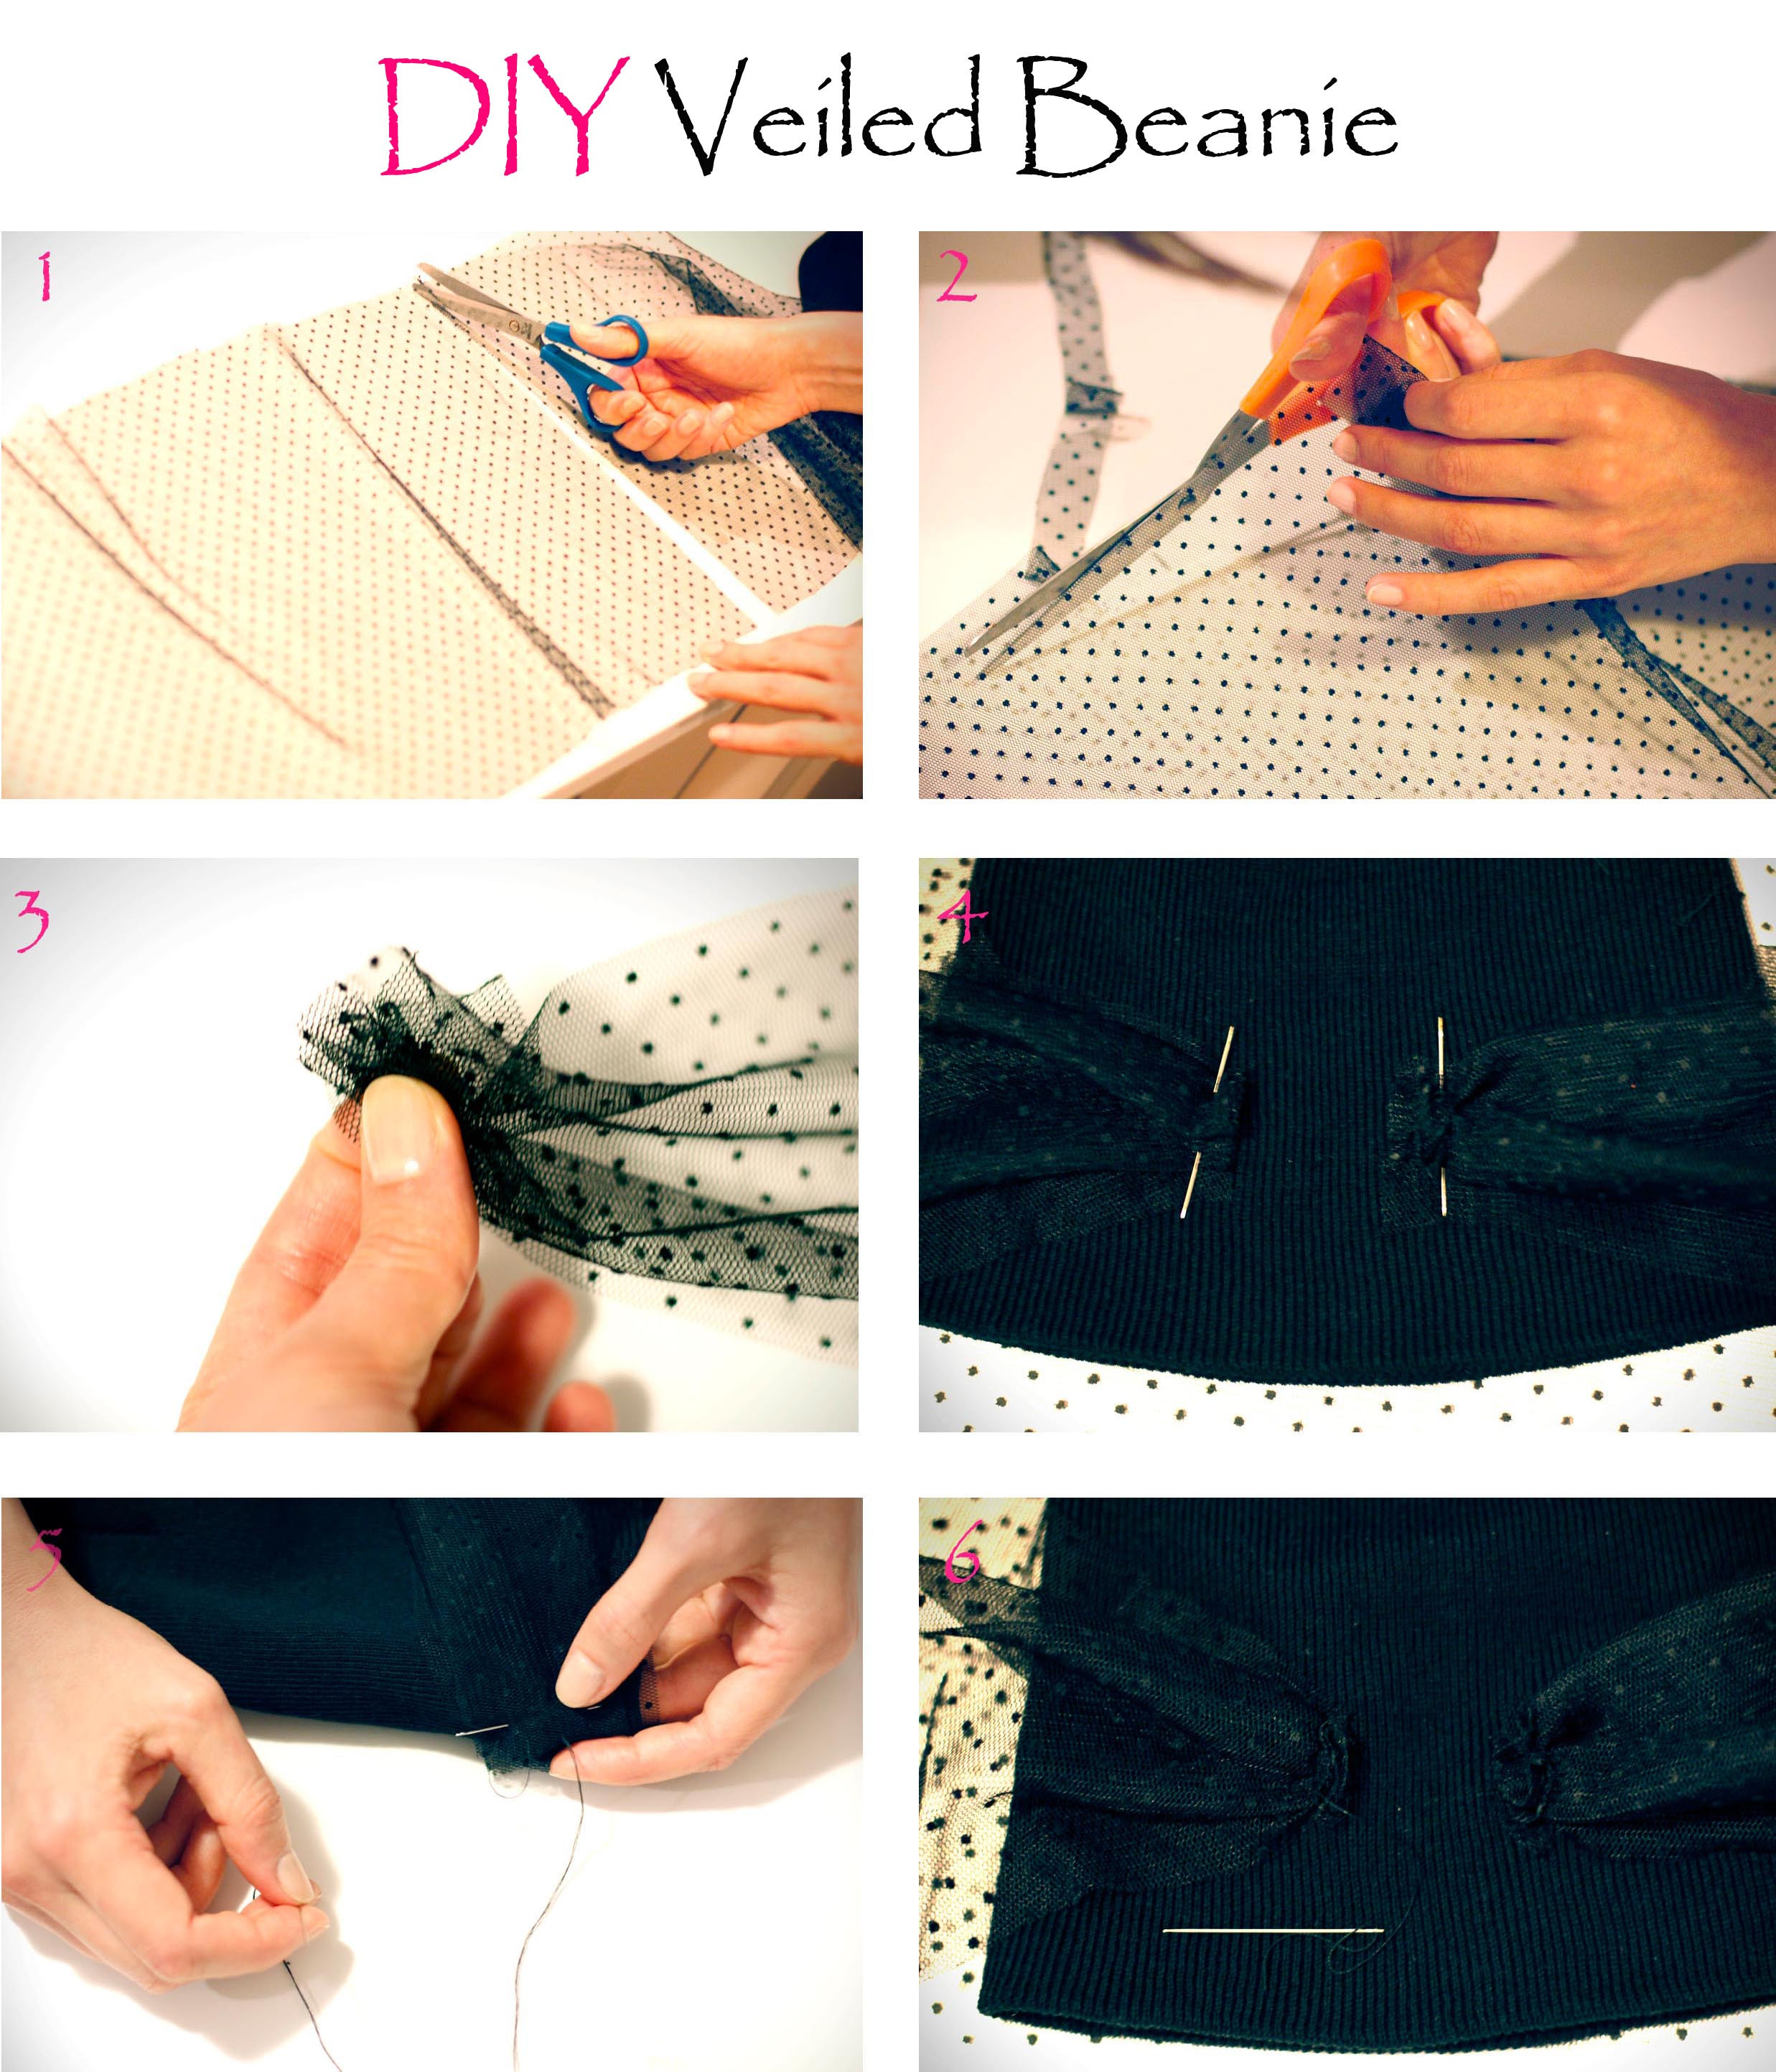 Diy Blog Fashion
 CrashingRED DIY Jil Sander inspired veiled beanie